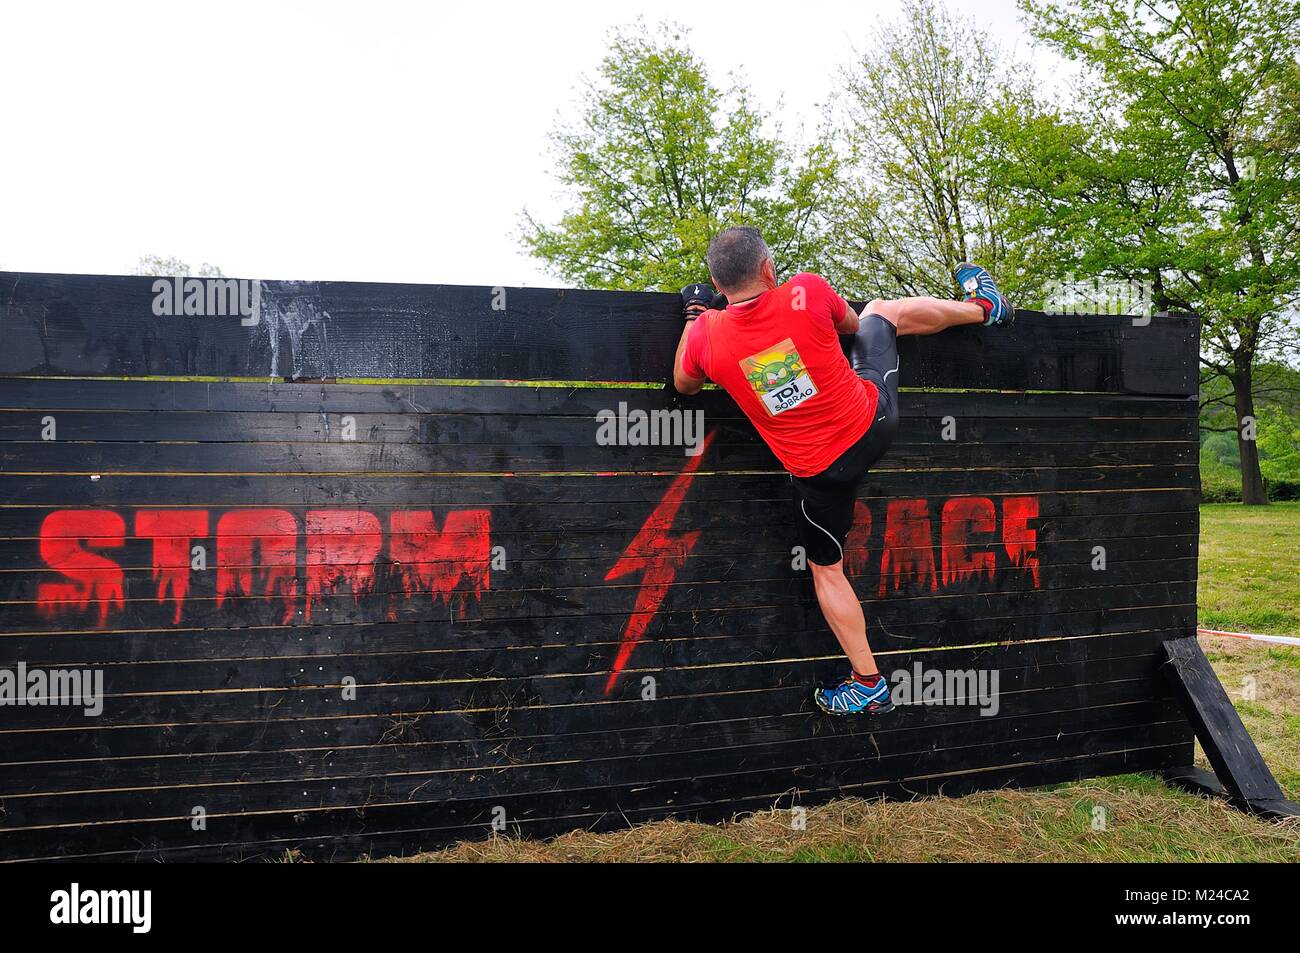 OVIEDO, España - 9 de mayo: Storm Race, una carrera de obstáculos extremos en Mayo 9, 2015 en Oviedo, España. Runner saltando una pared de madera. Foto de stock